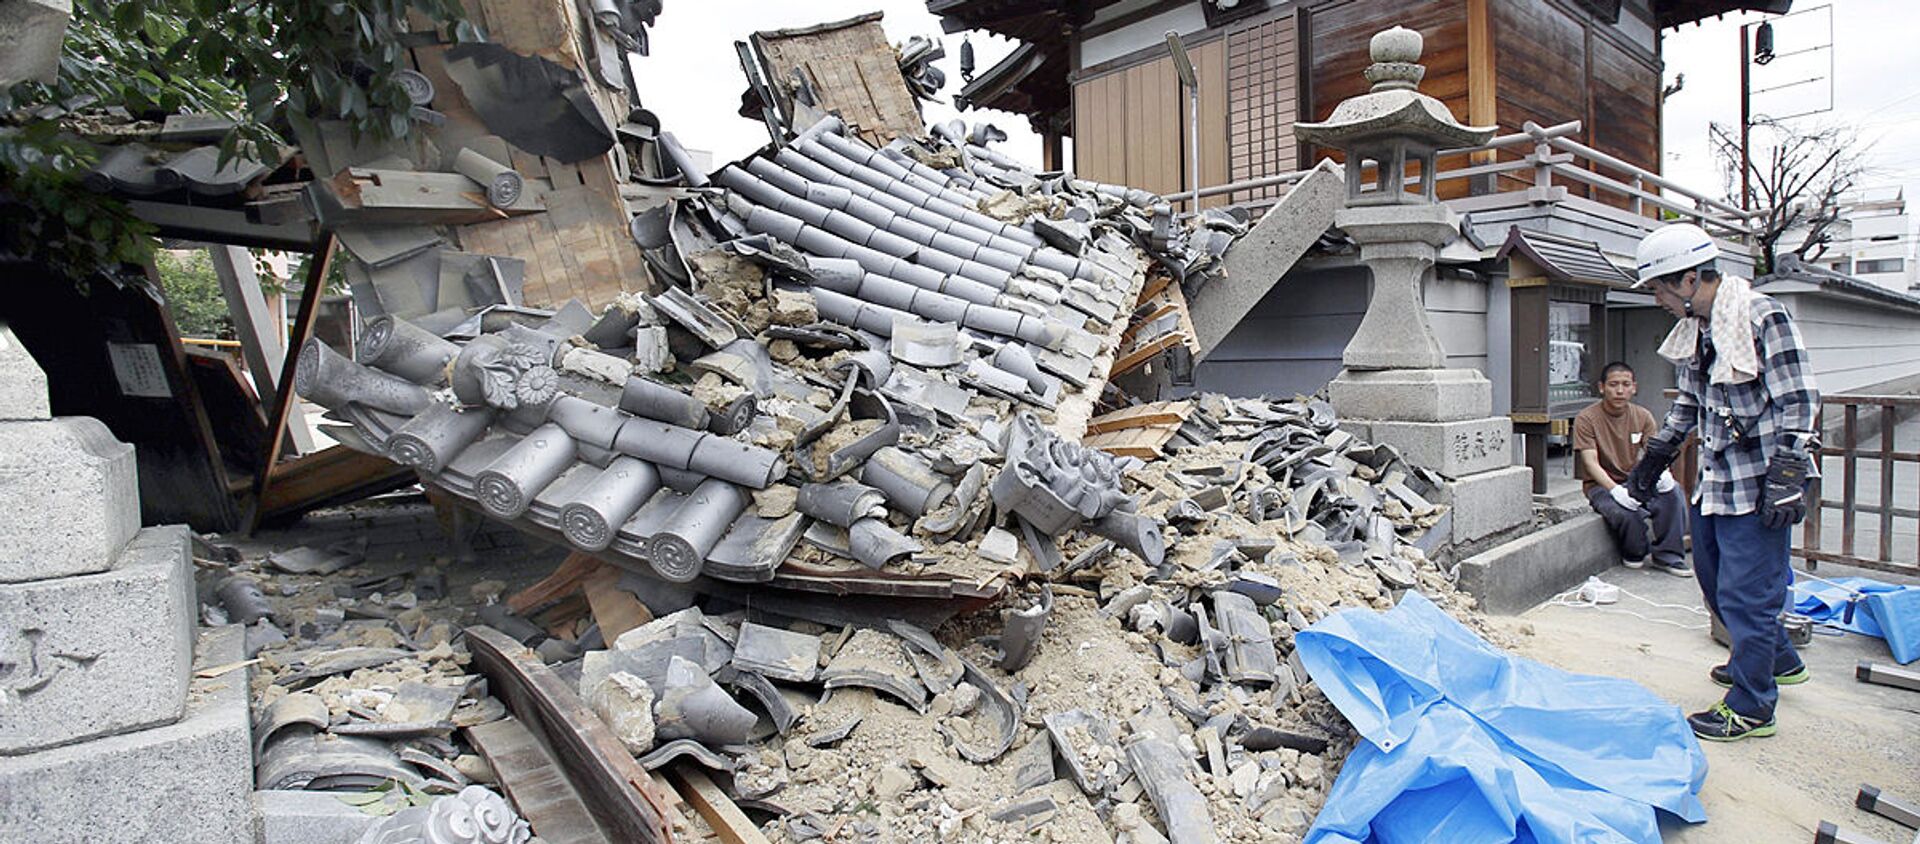 Разрушенные в результате землетрясения дома в Японии  - Sputnik Узбекистан, 1920, 20.06.2018